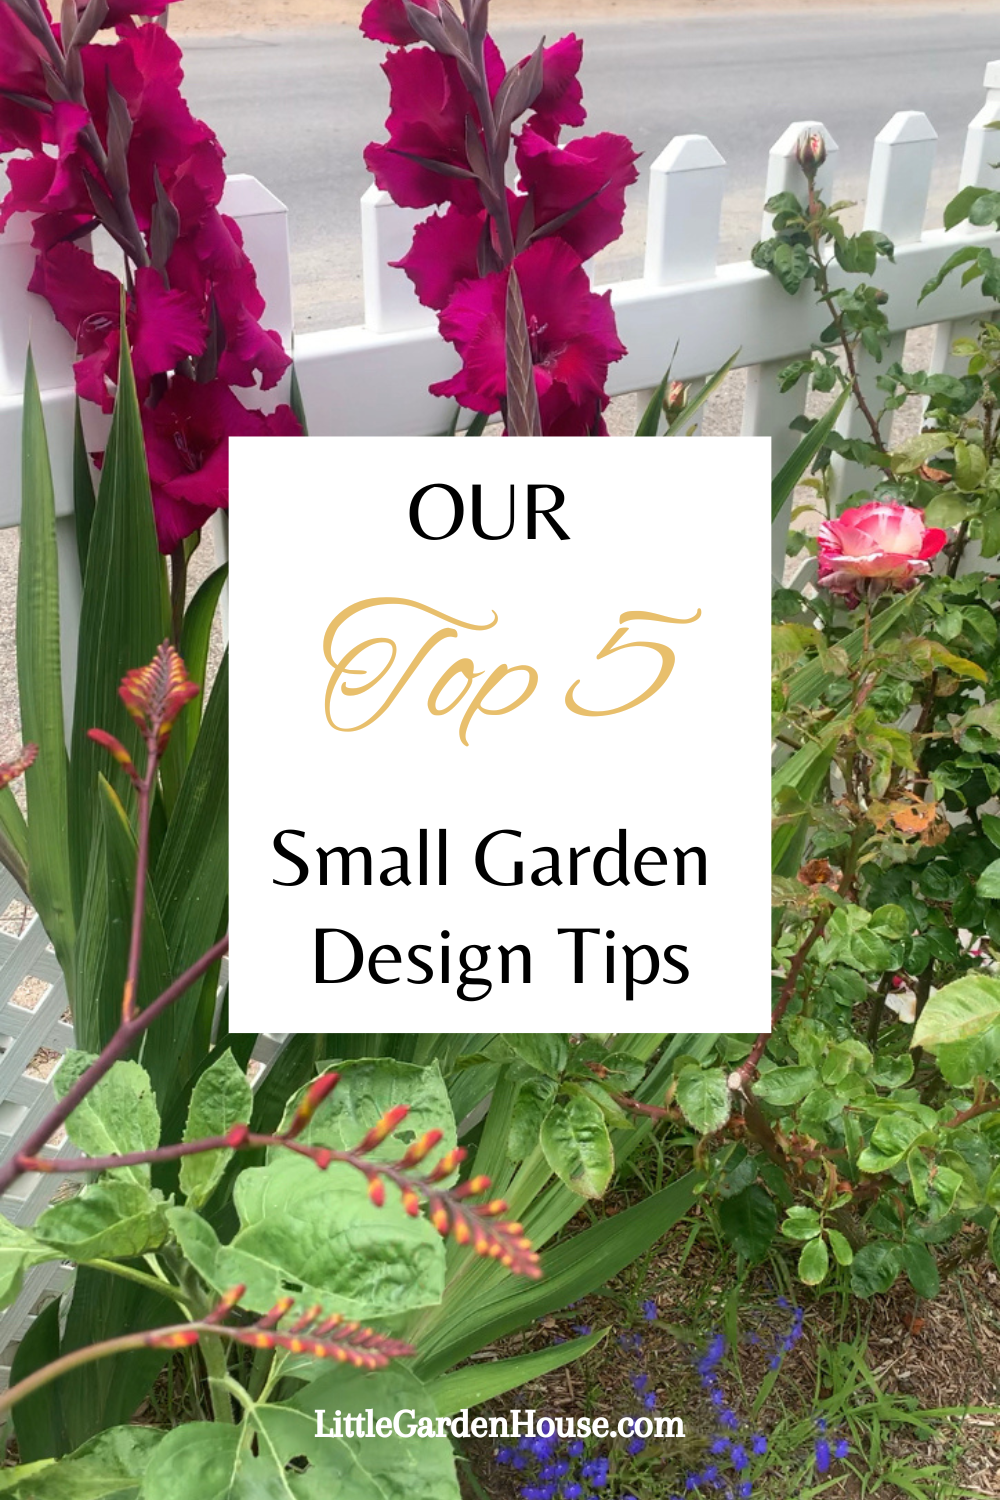 Our Top Small Garden Design Tips